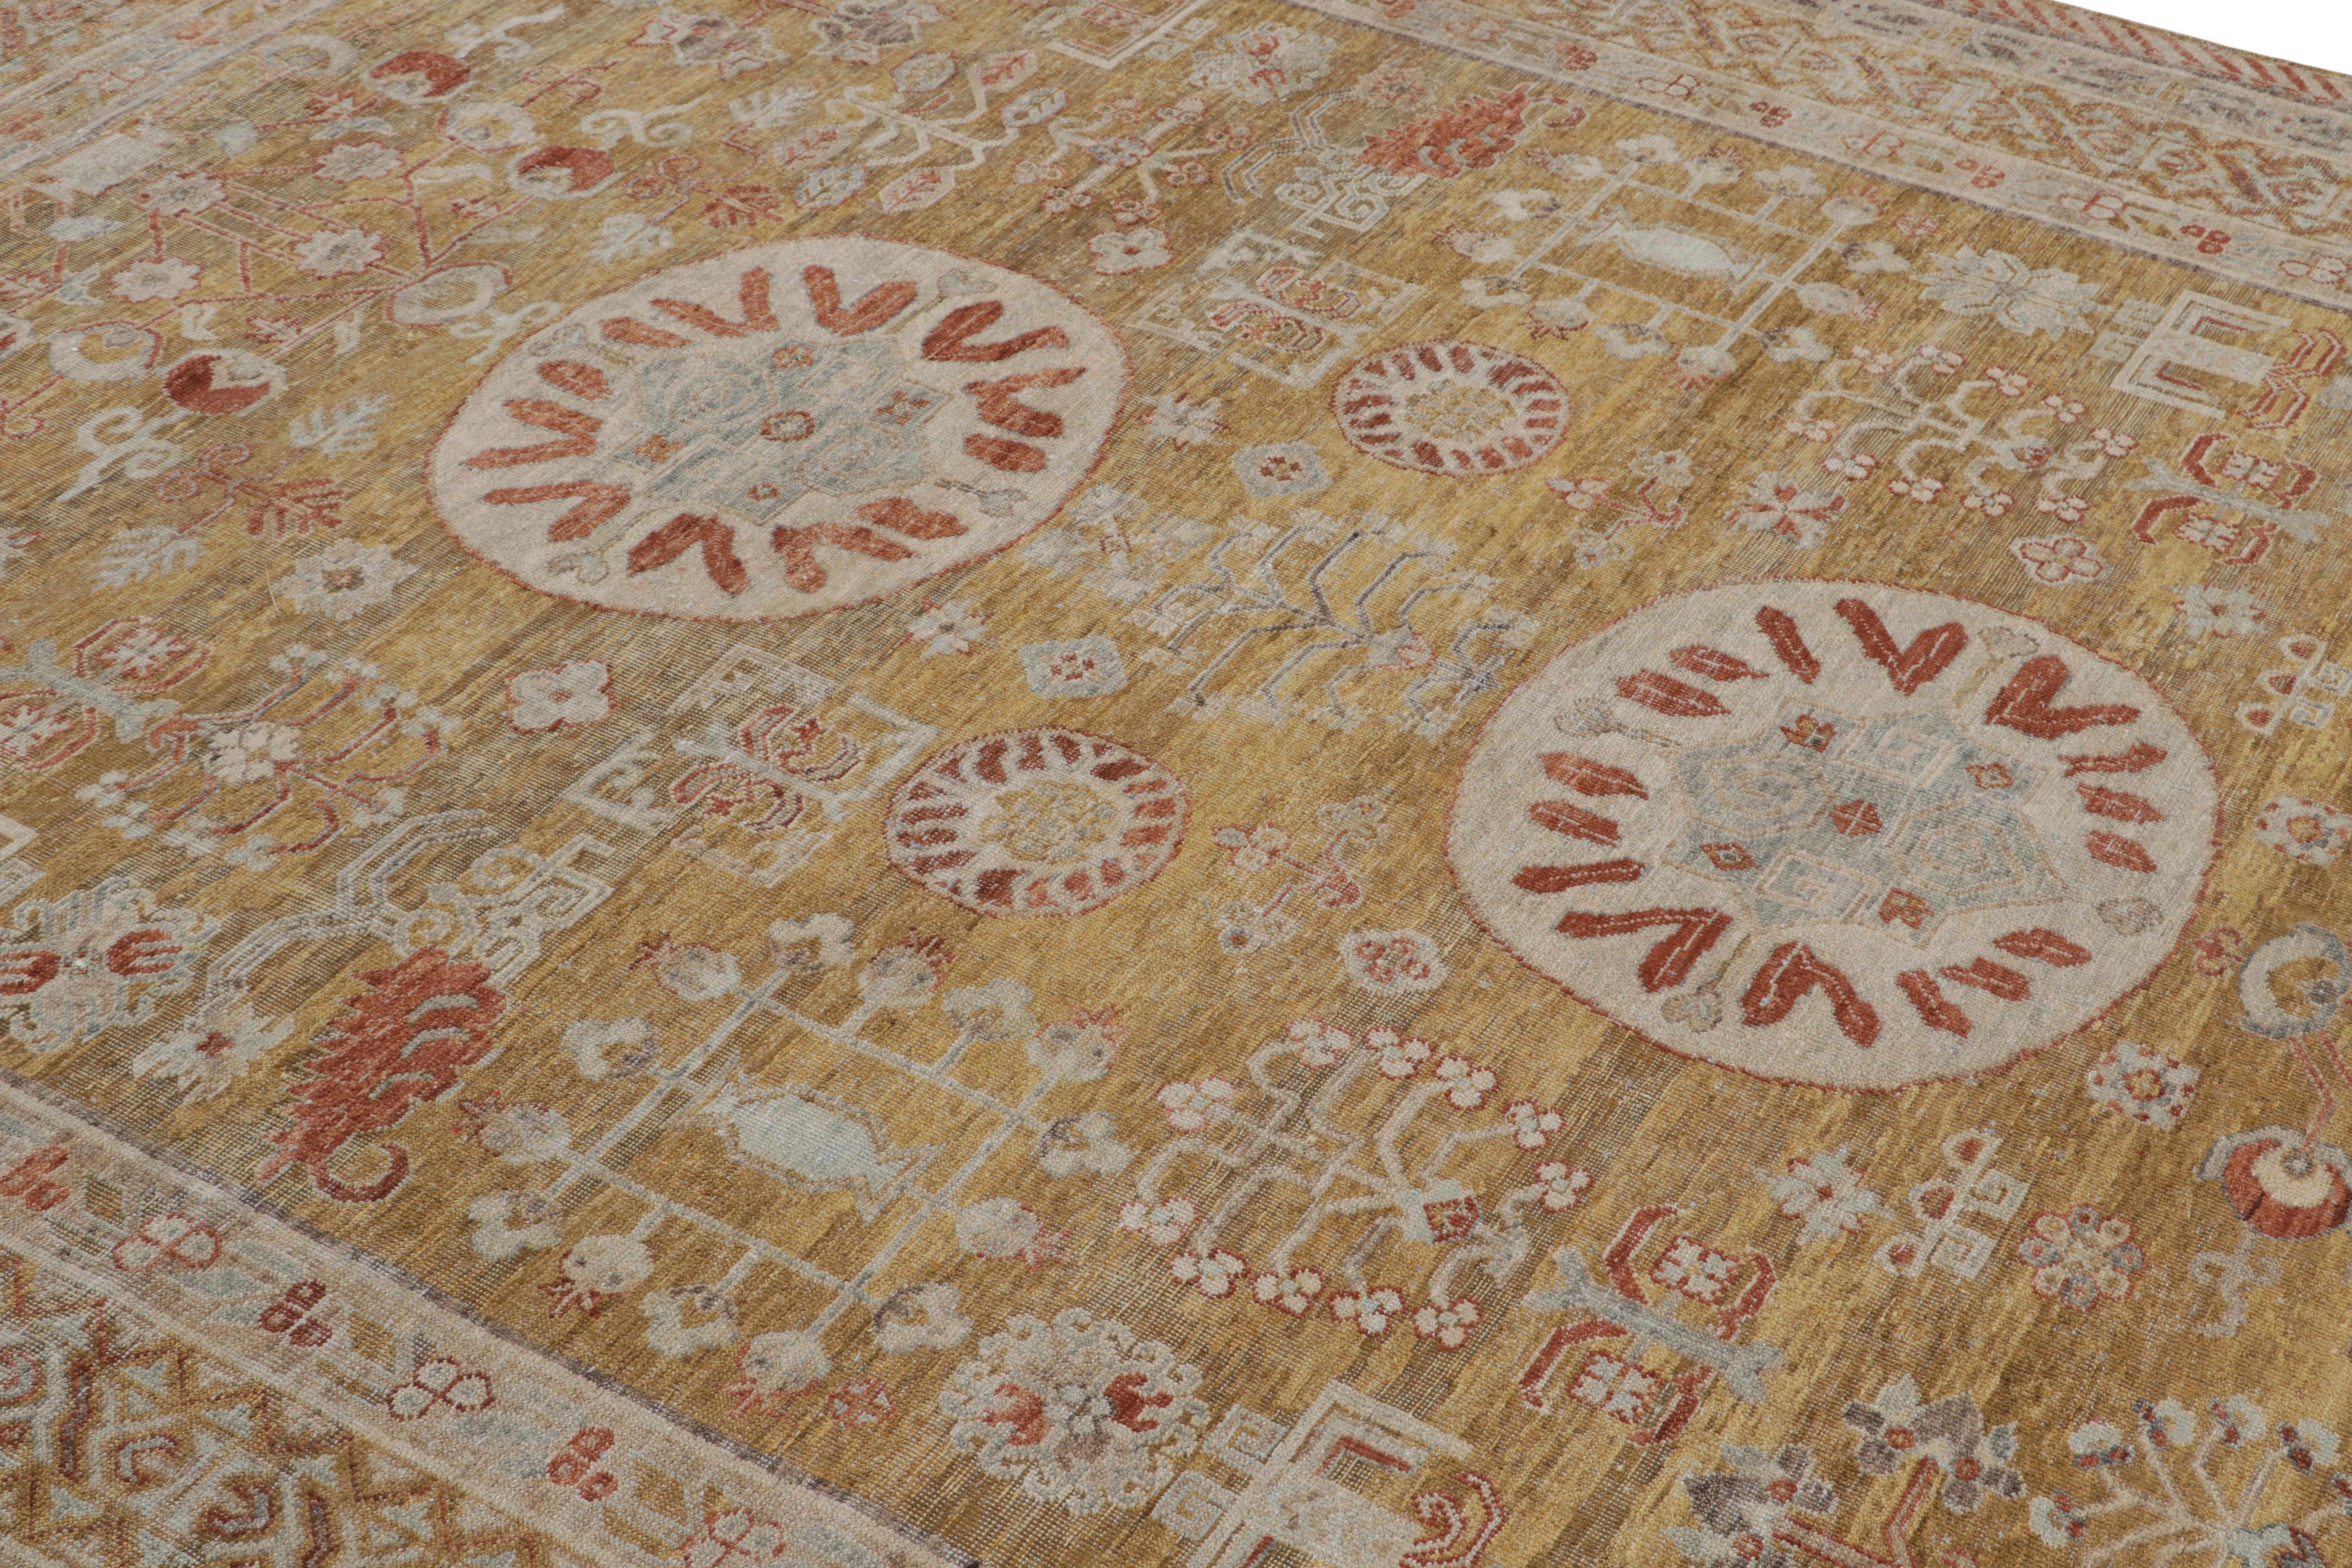 Dieser neue 8x10 große Teppich aus der Modern Classics Collection'S von Rug & Kilim ist aus Wolle handgeknüpft und von antiken Khotan-Teppichen inspiriert.

Über das Design:

Der Teppich ist mit einem goldenen Feld und einer rostroten Bordüre